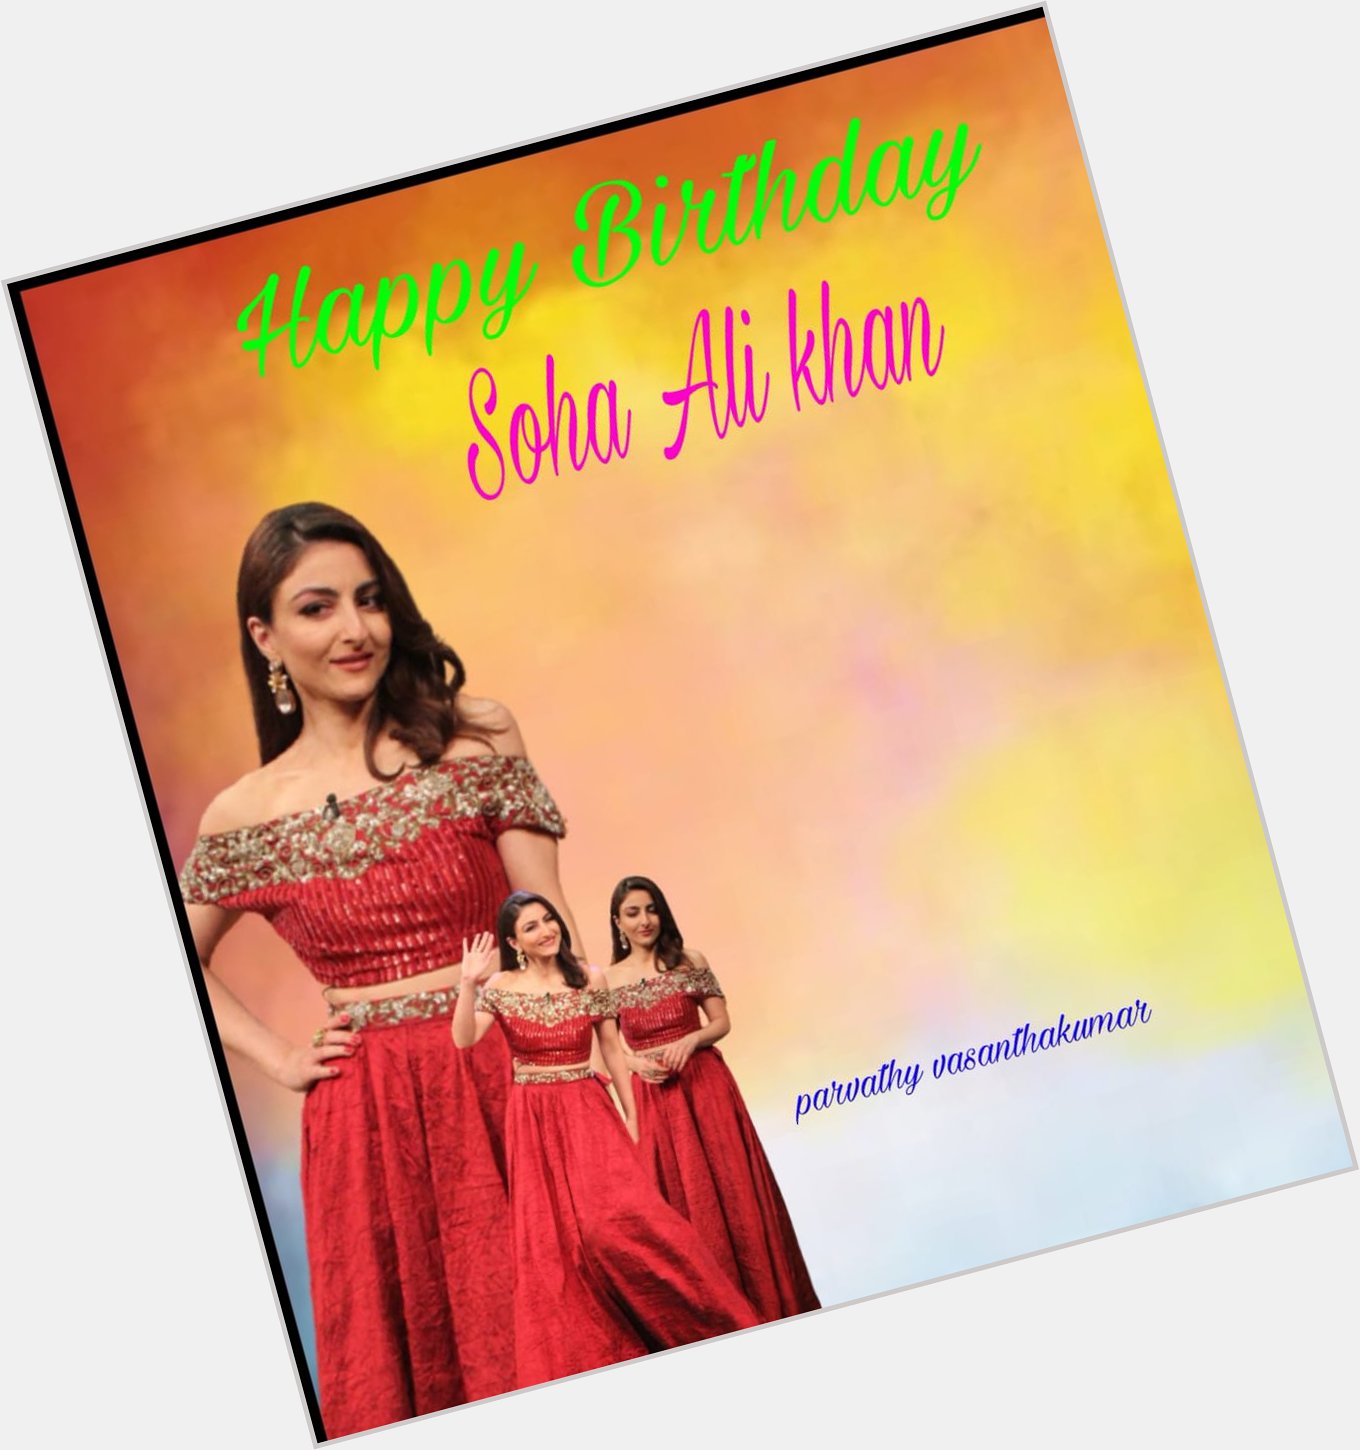 Happy Birthday soha ali khan 